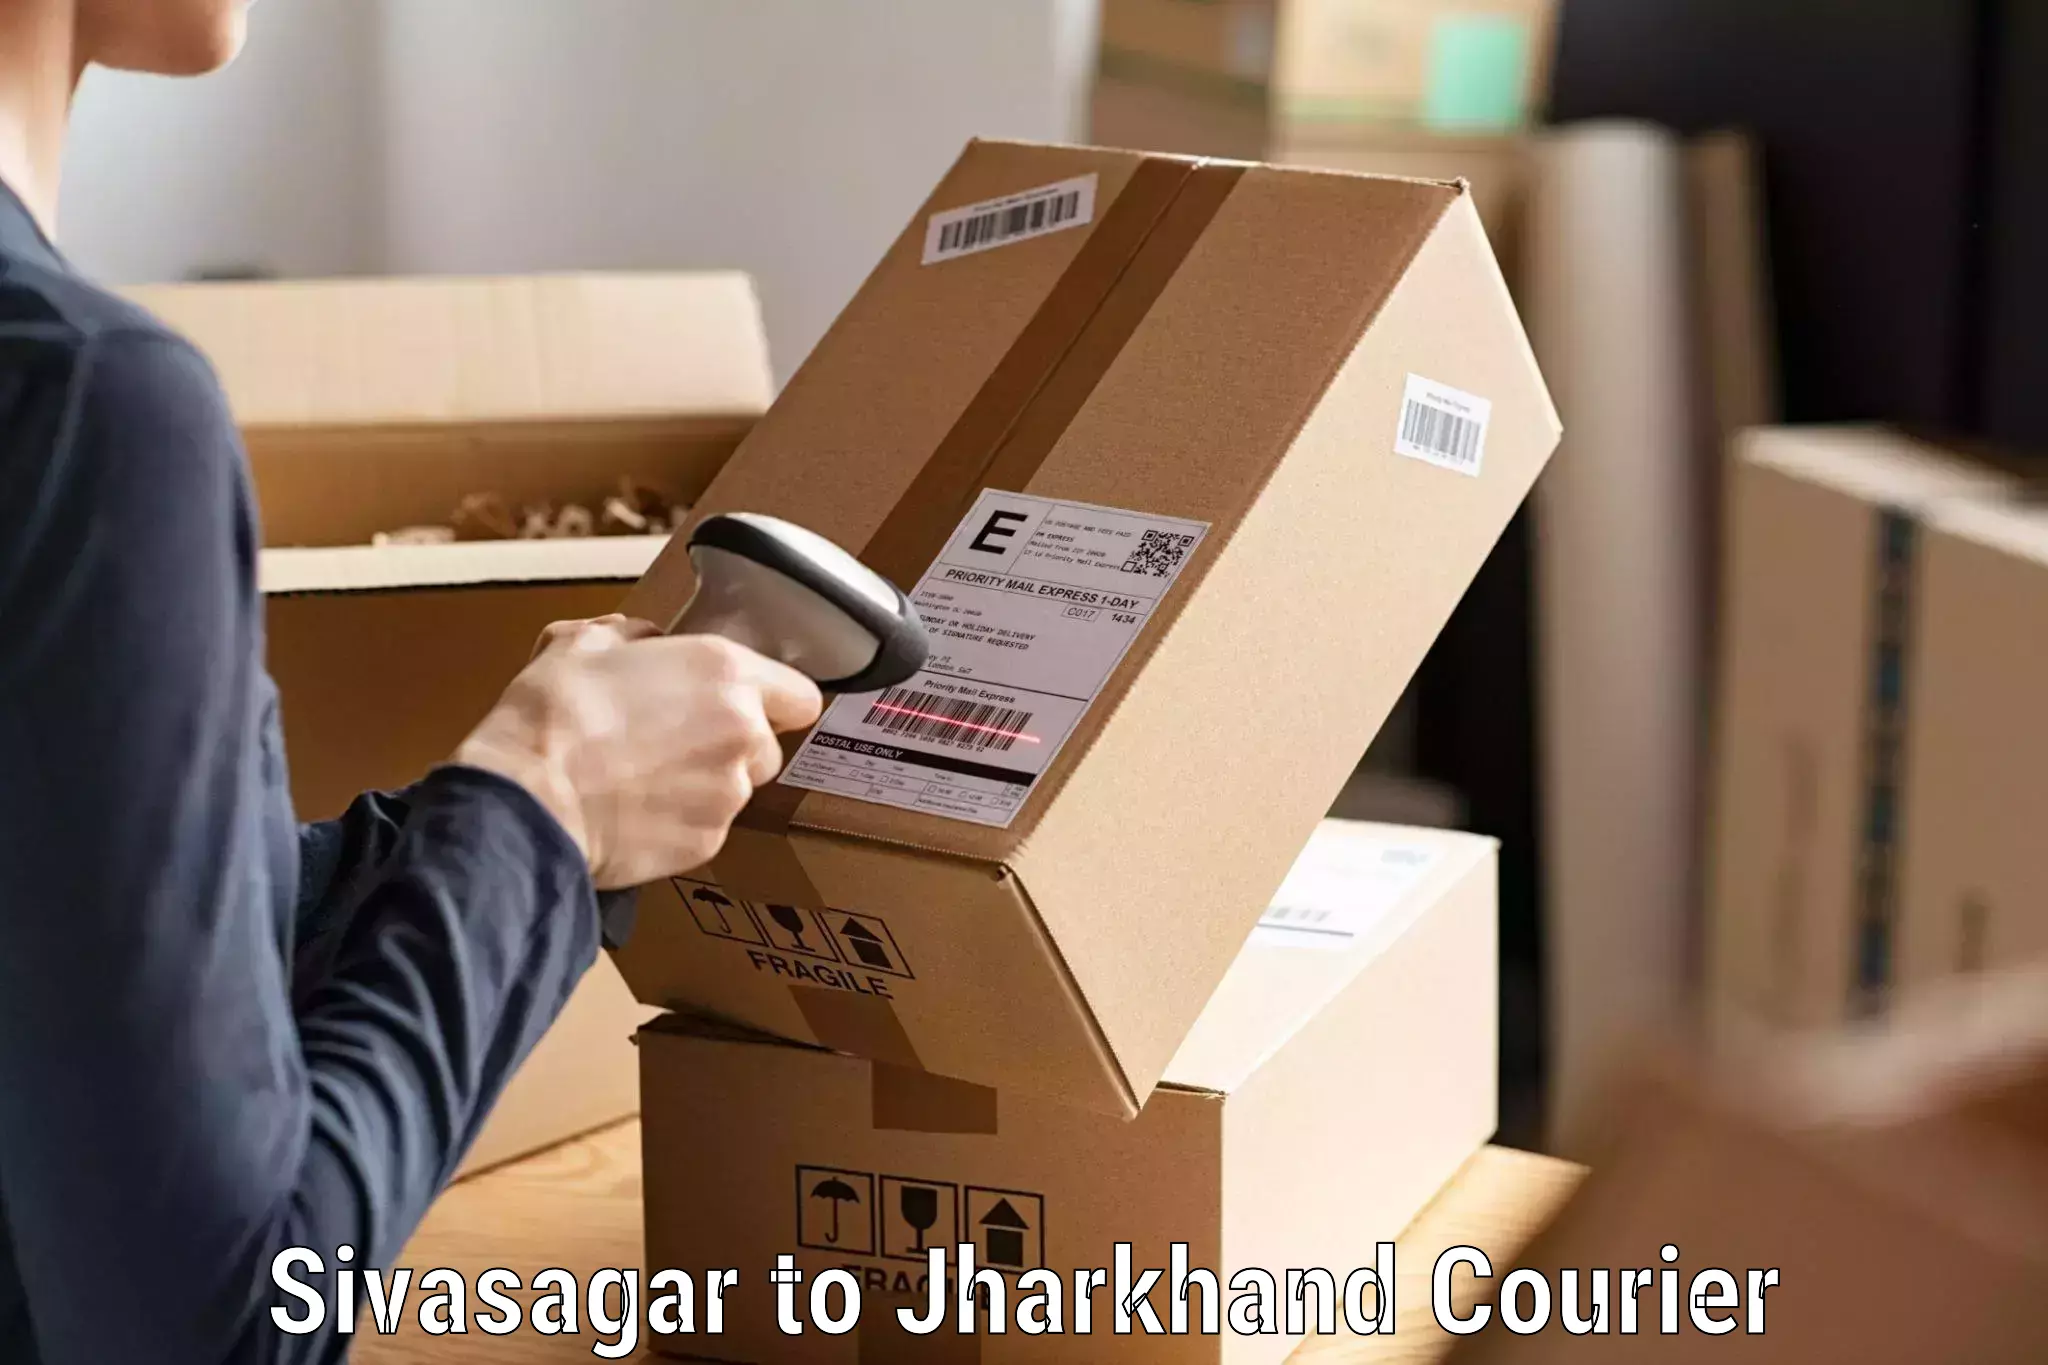 Fast delivery service Sivasagar to Seraikella